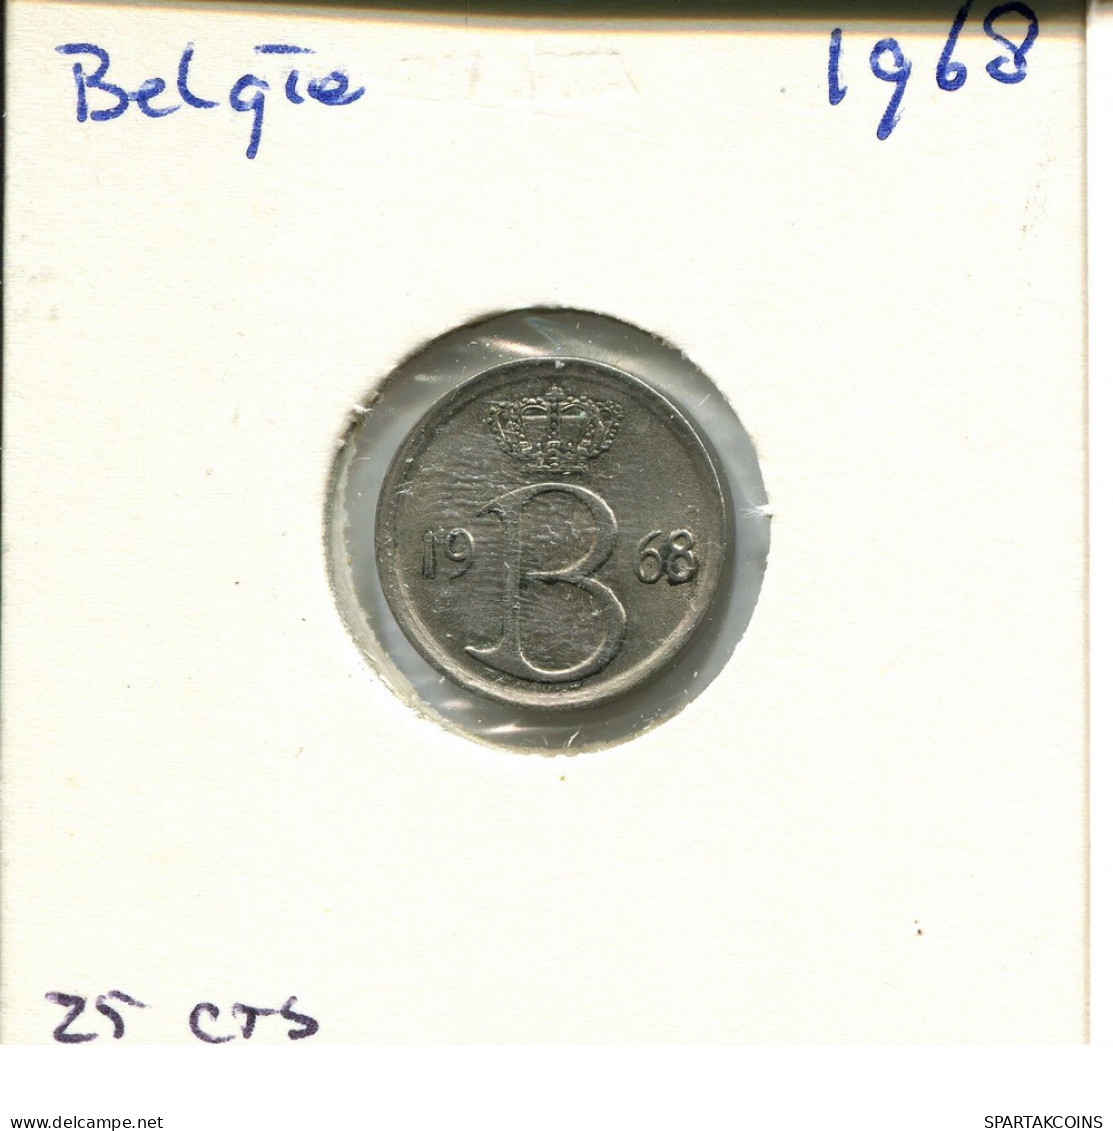 25 CENTIMES 1968 DUTCH Text BELGIUM Coin #AU606.U - 25 Cents